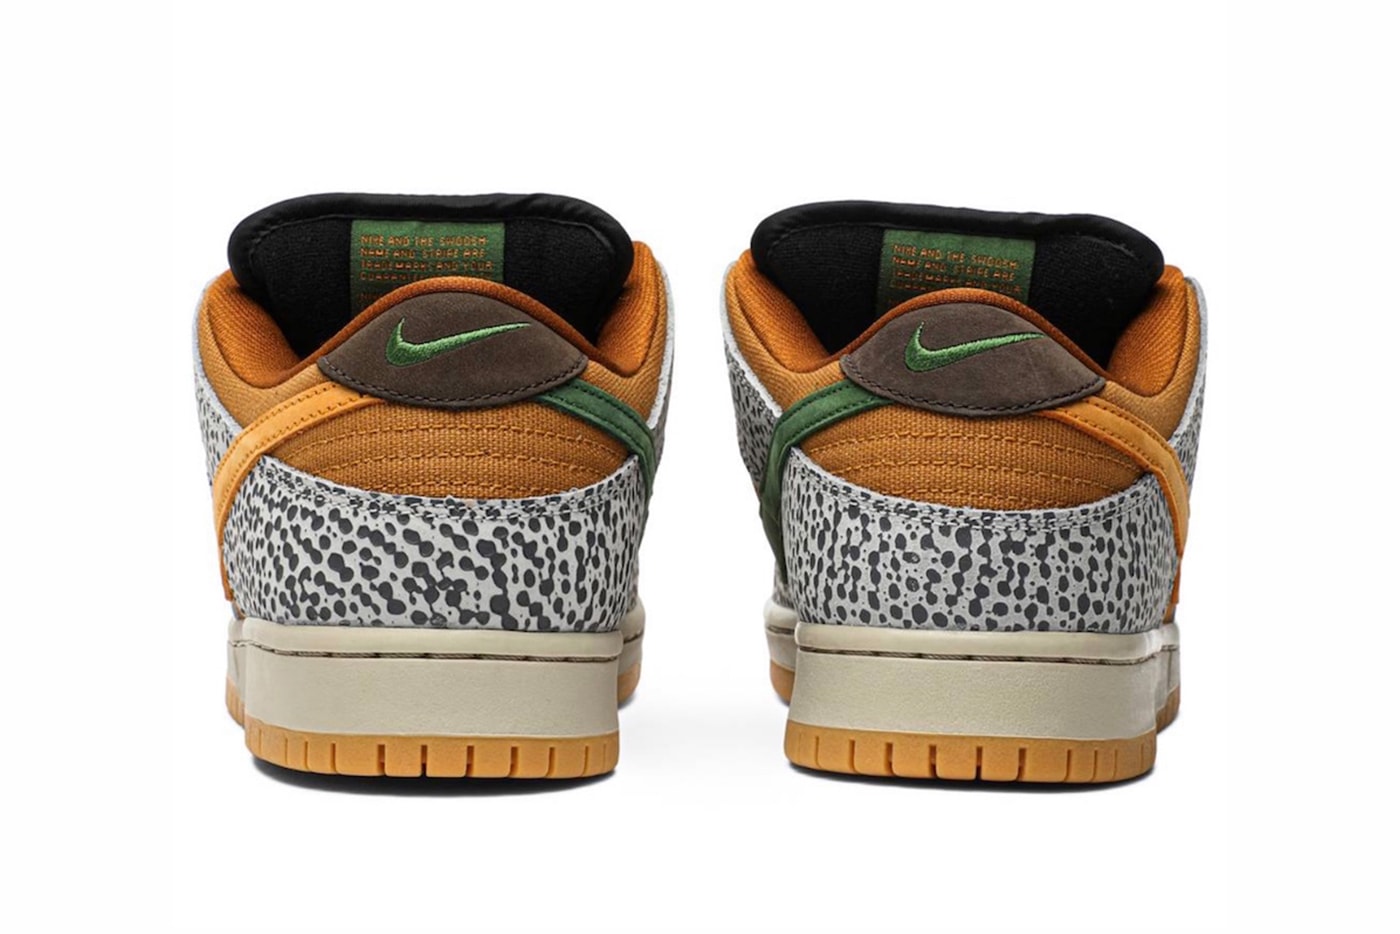 Nike SB Dunk Low 經典配色「Safari」發售日期正式曝光